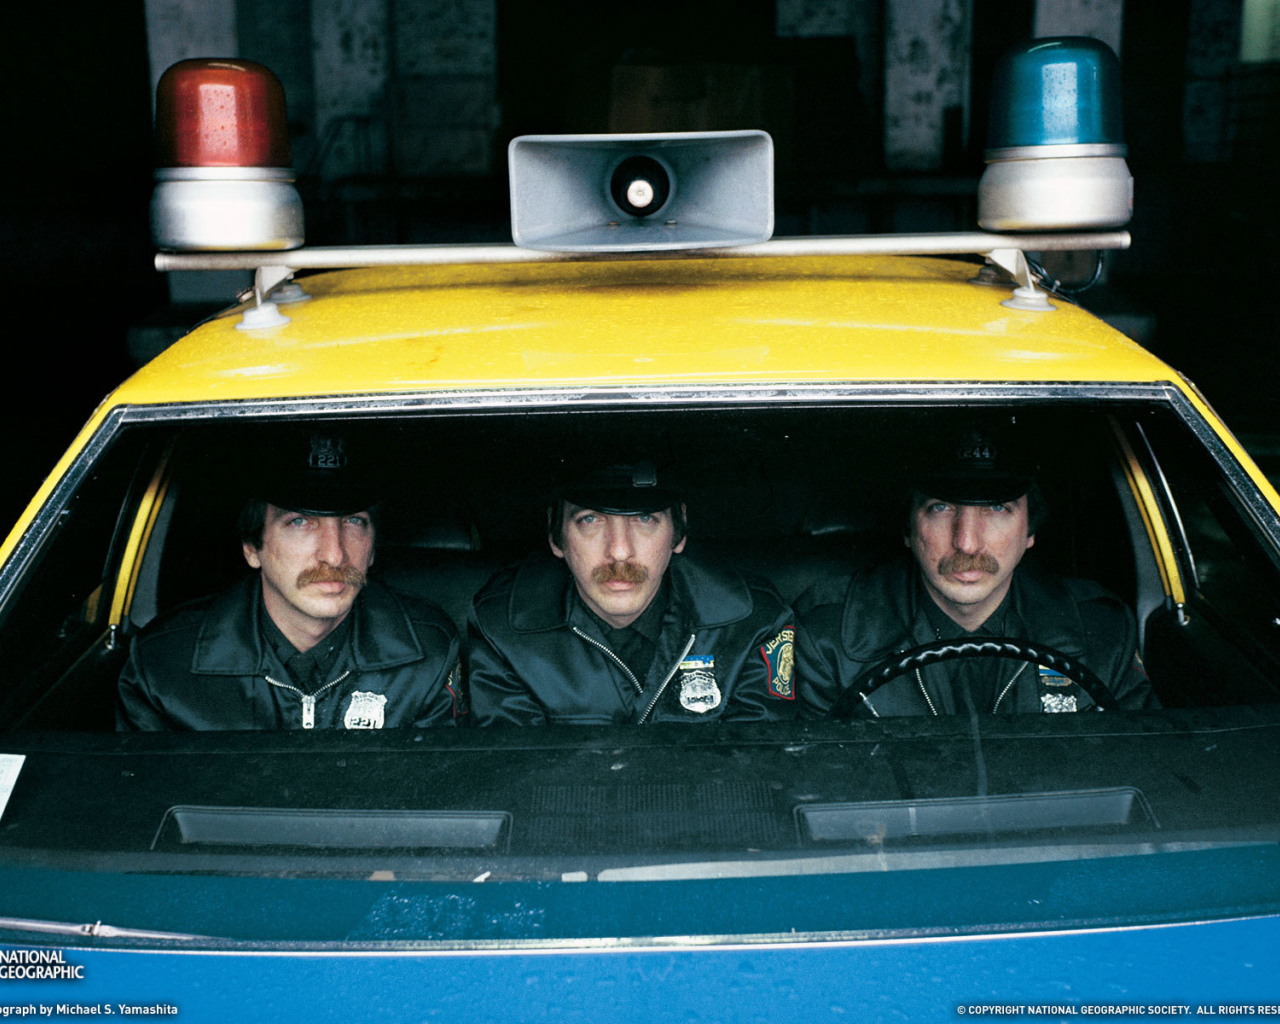 Три одинаковых полицейских